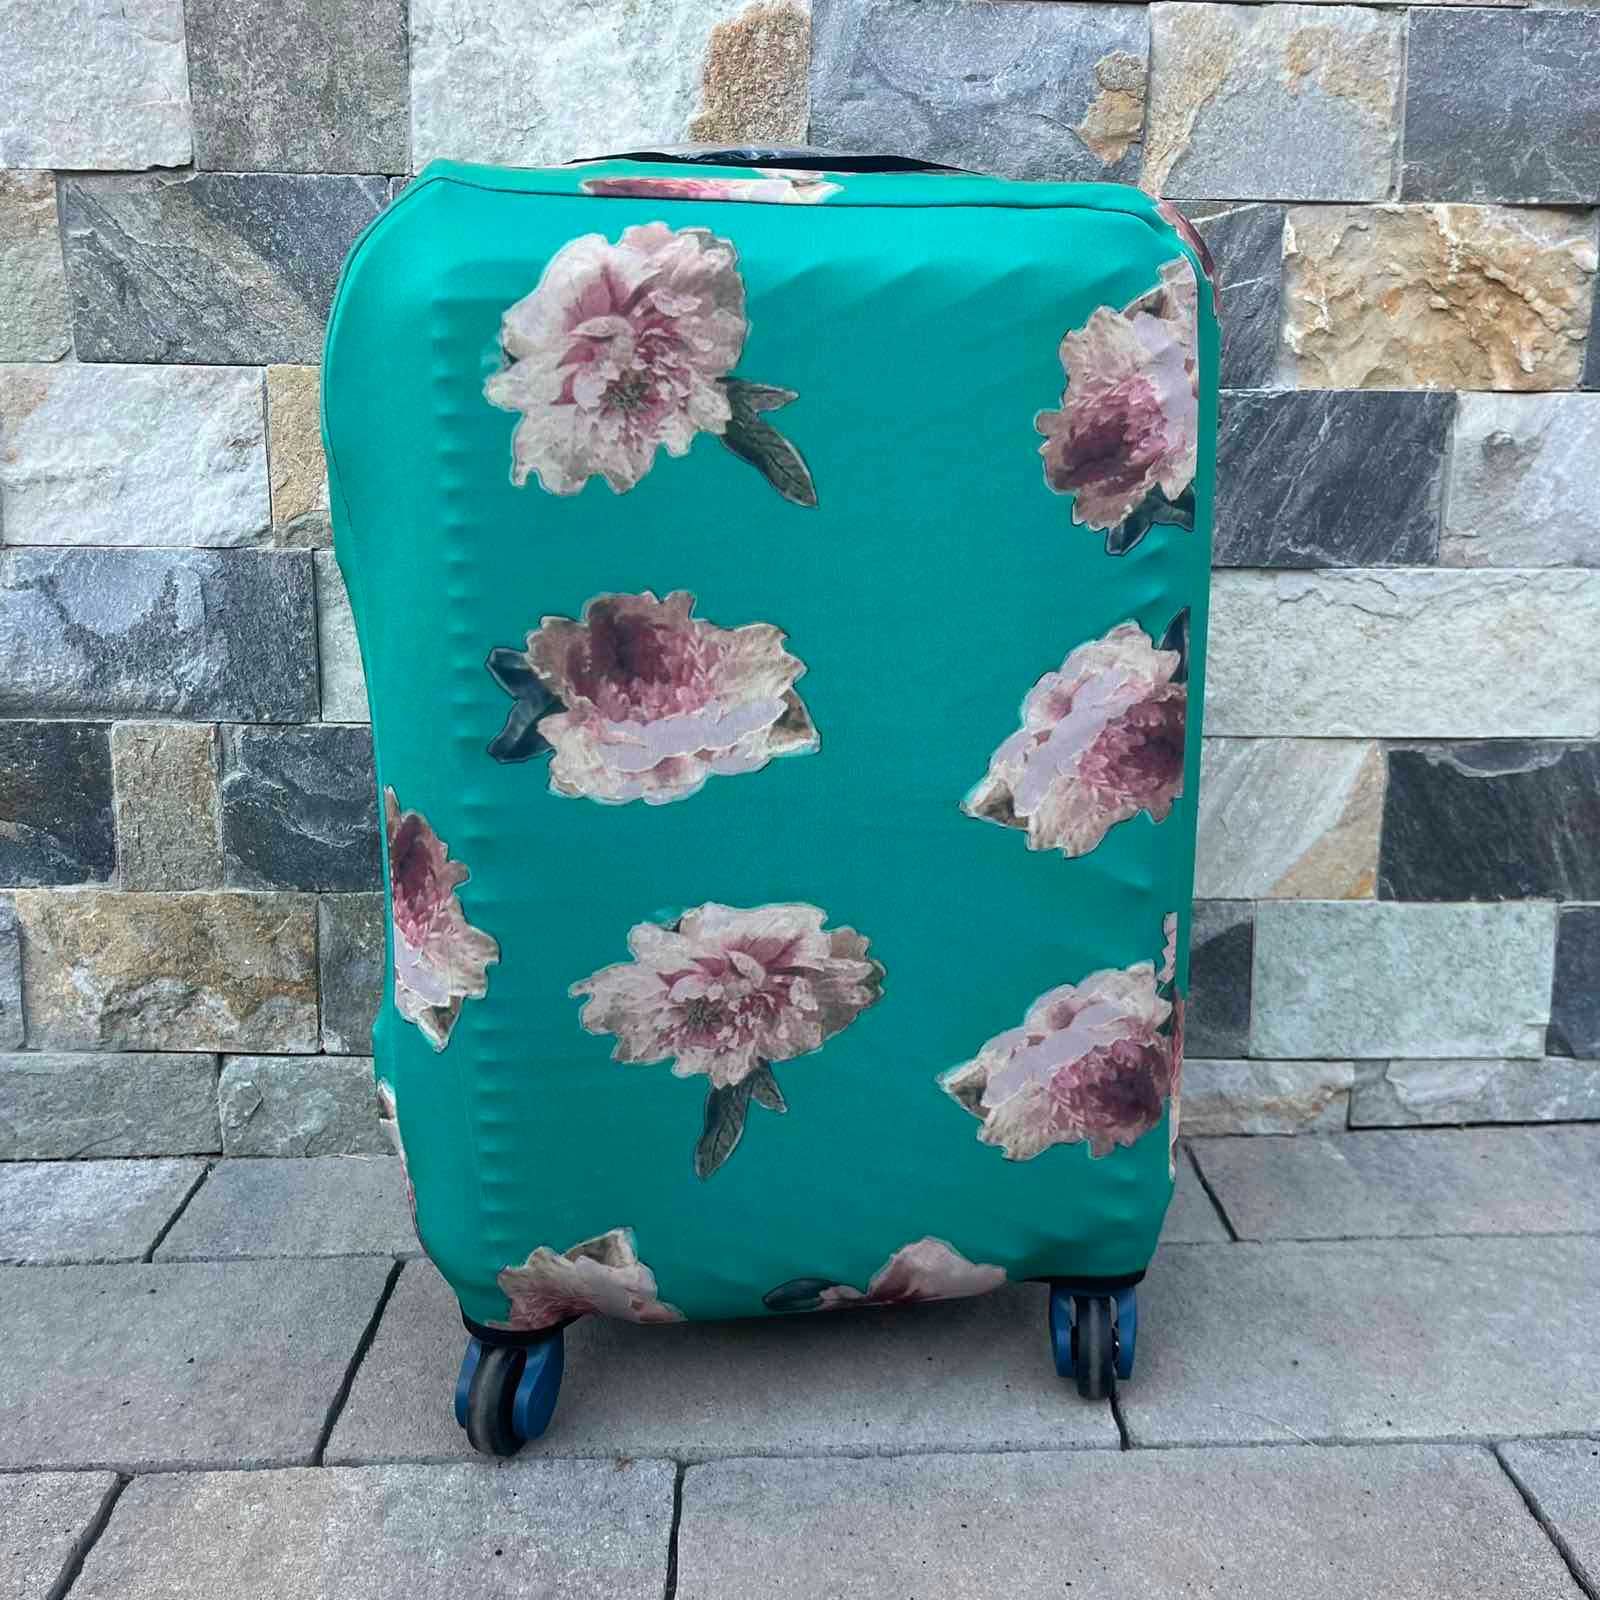 ЧОХЛИ Чехол на валізу Чехол для чемодана S M L Чехлы для чемоданов